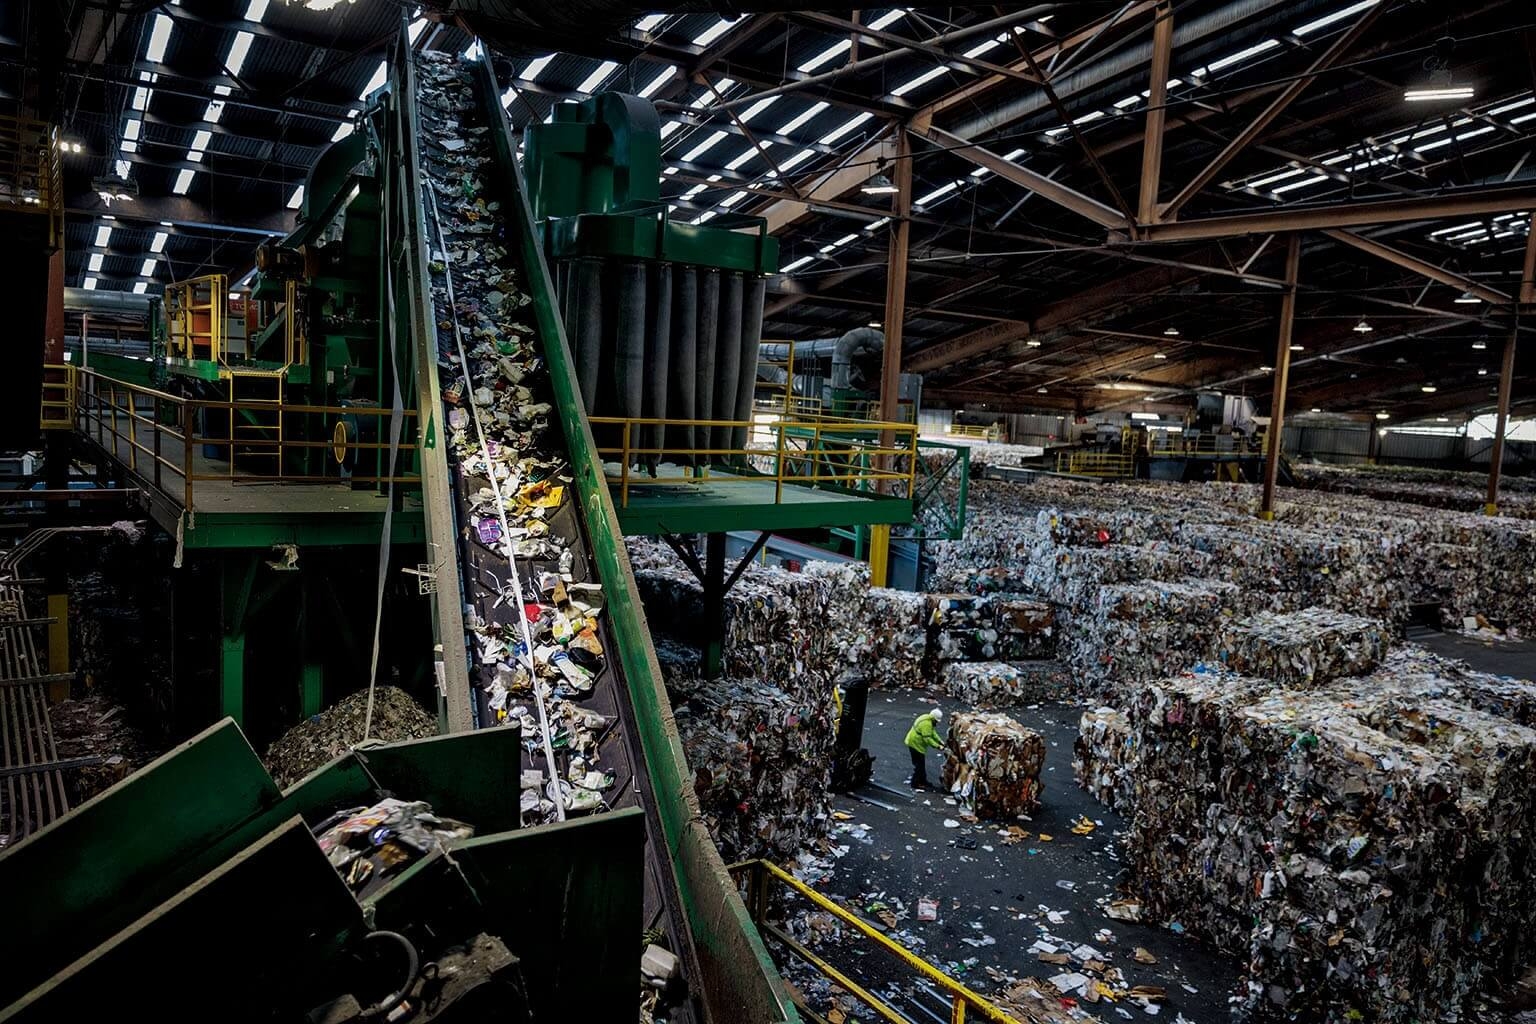 綠源再生公司在舊金山的最大資源回收廠，每天處理450至550公噸的垃圾。圖中，輸送帶正把各類塑膠垃圾往光學分類器送去。攝影：藍迪．奧森 RANDY OLSON